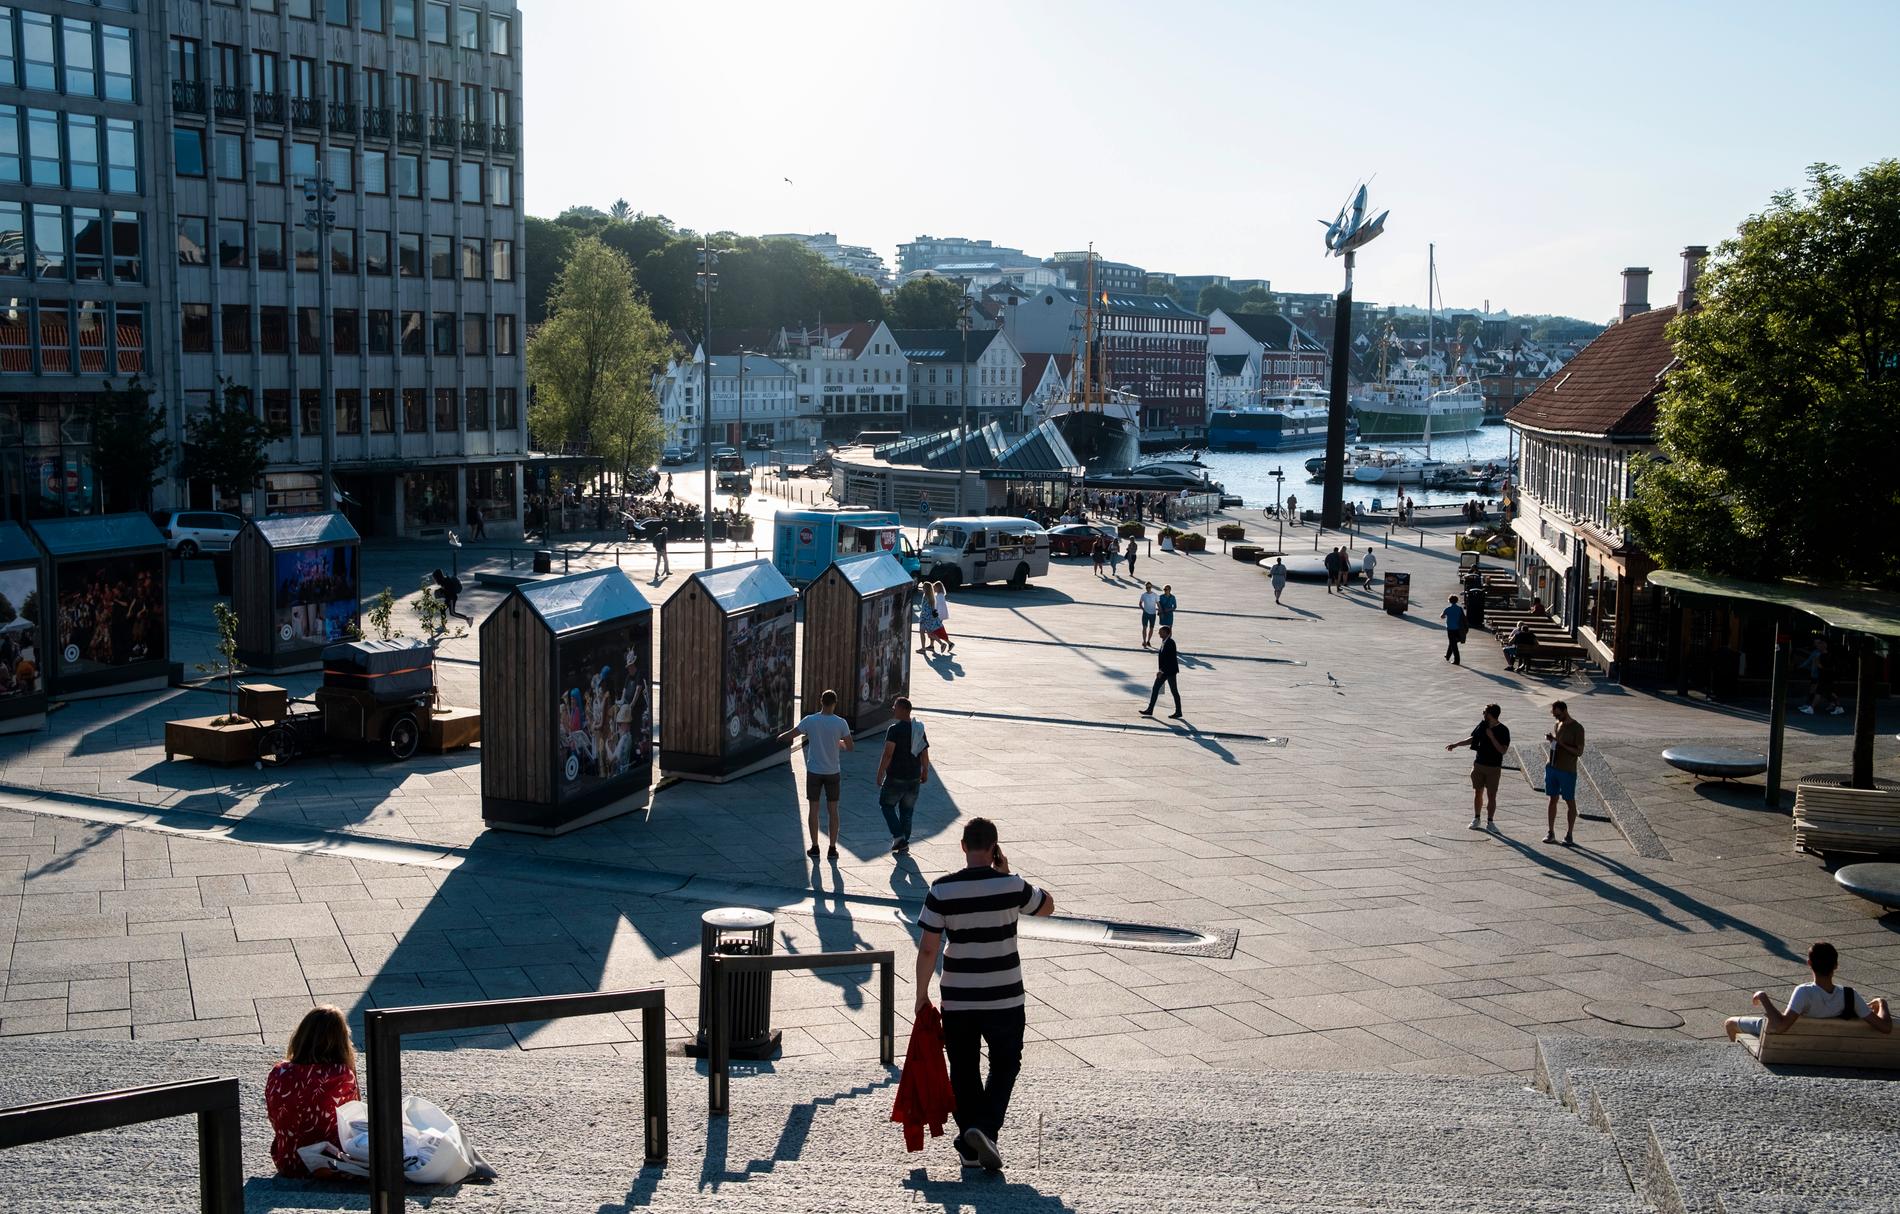 En torgtrapp i et sommertemperert Stavanger! 💖👌  Men farer lurer...